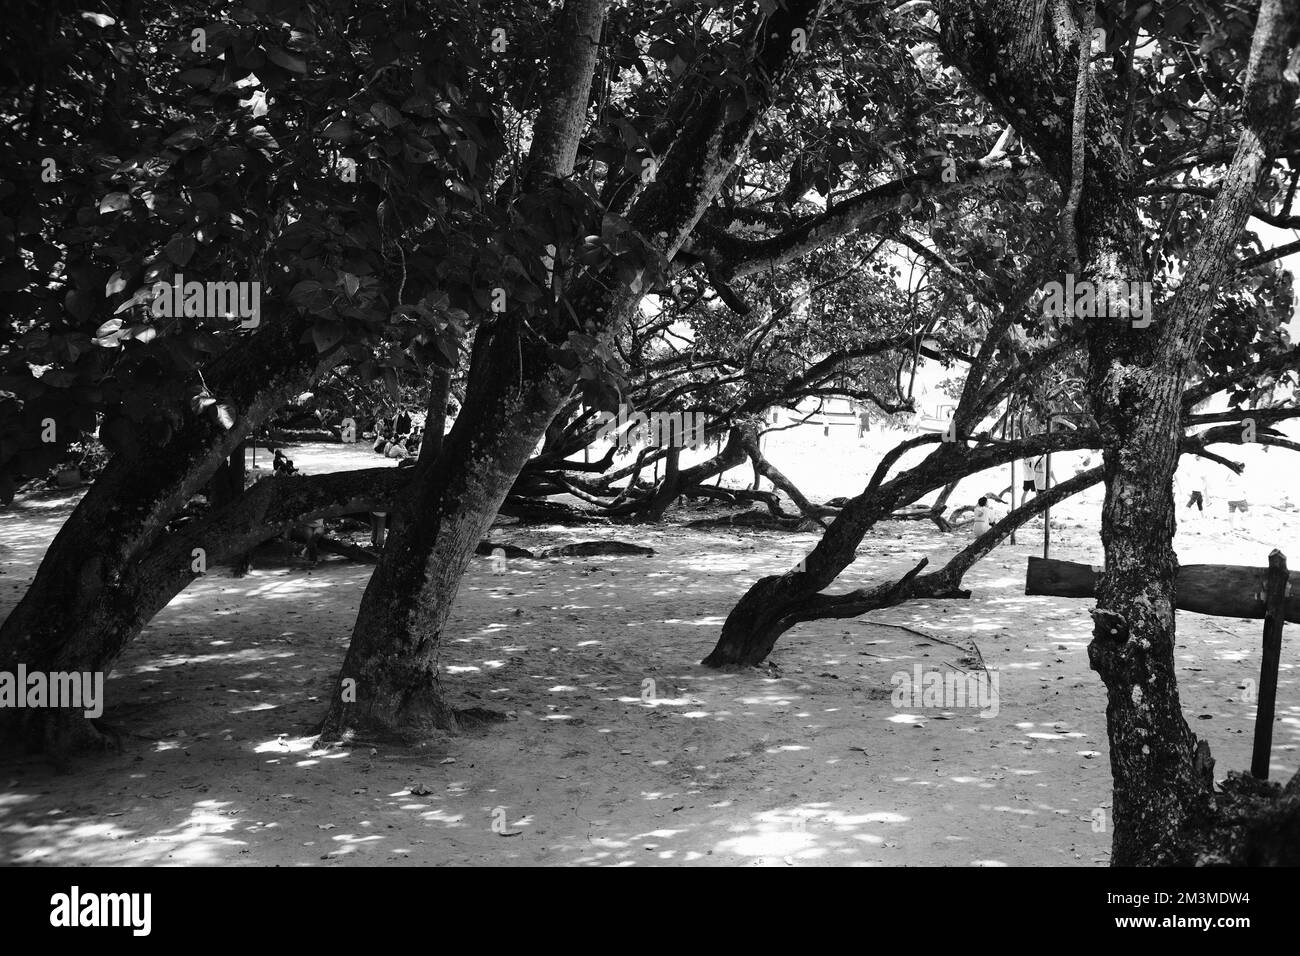 Photo en noir et blanc, photo monochrome d'une mangrove sur la côte de Pangandaran - Indonésie Banque D'Images